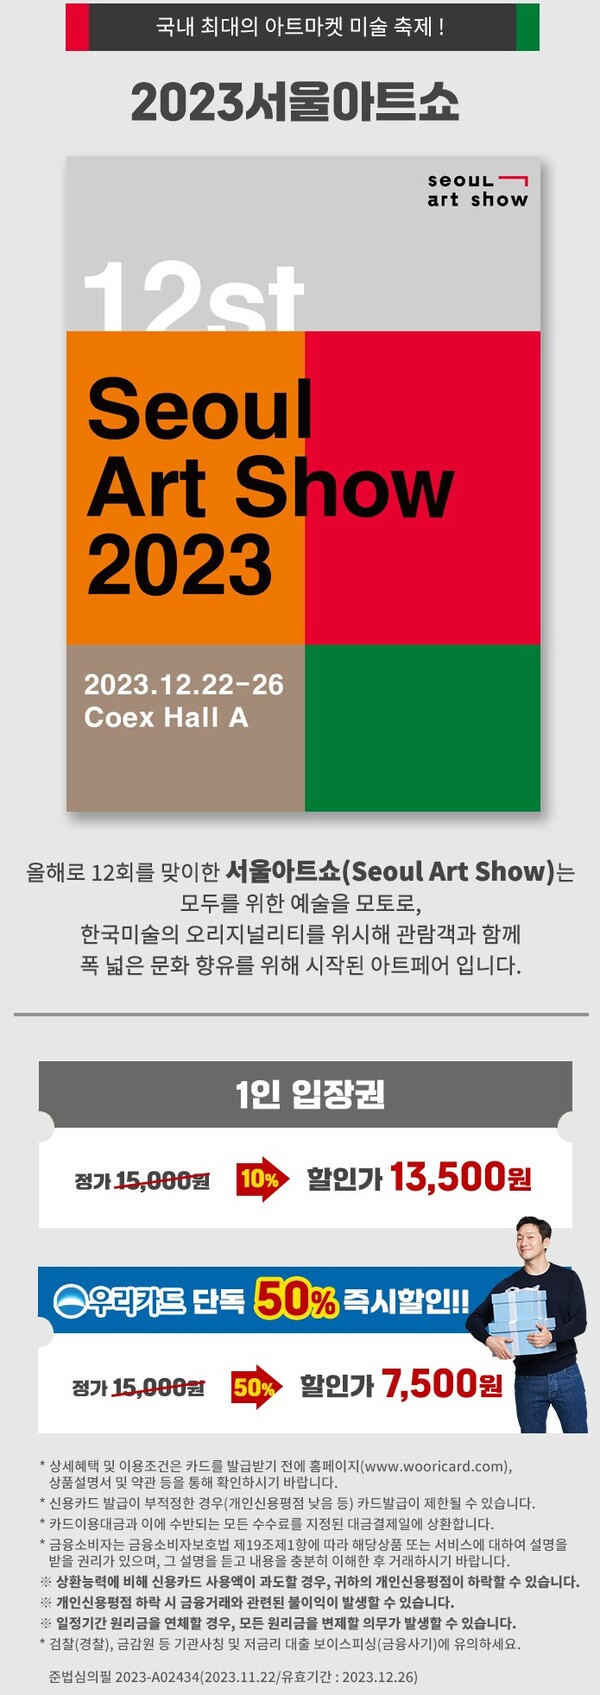 우리카드가 ‘제 12회 2023 서울아트쇼’ 관람권 단독 할인 이벤트를 진행한다고 7일 밝혔다. (제공: 우리카드)